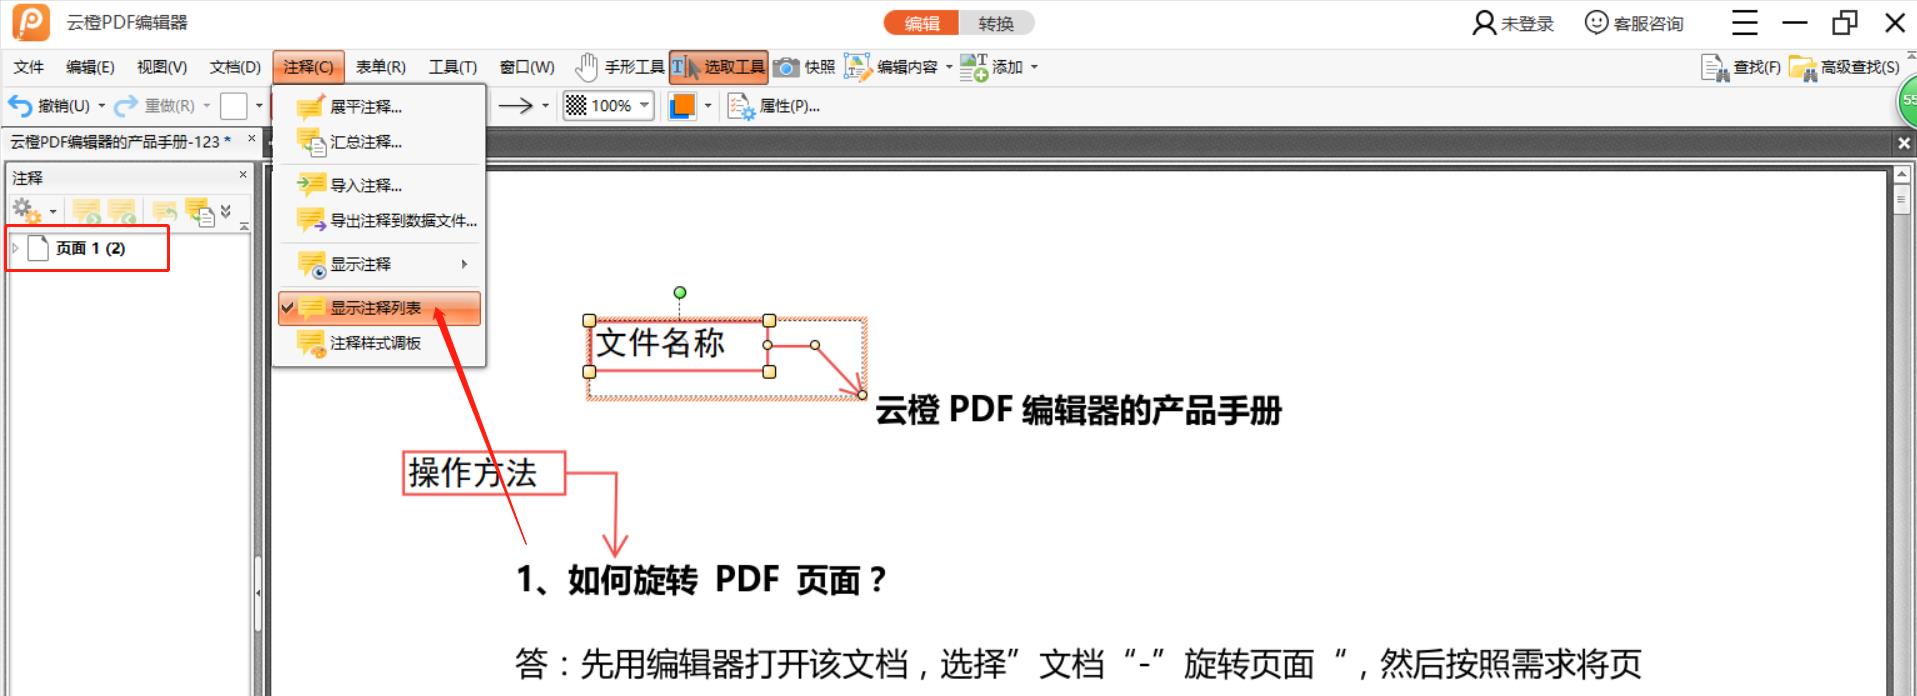 如何批量删除PDF文件的注释